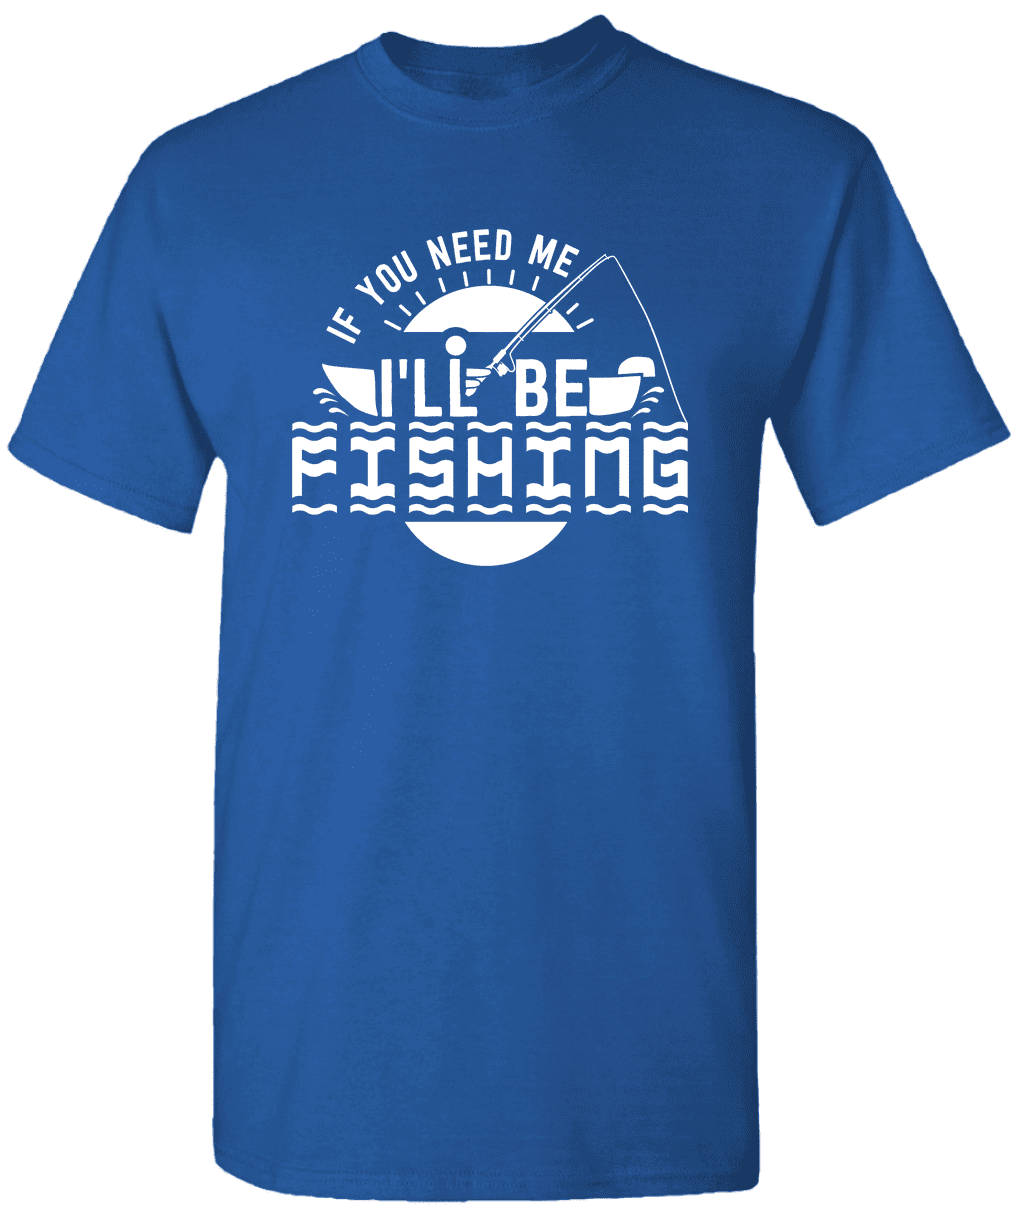 If You Need Me I'll Be Fishing - Novelty Fishing Shirt Fishing T-Shirt